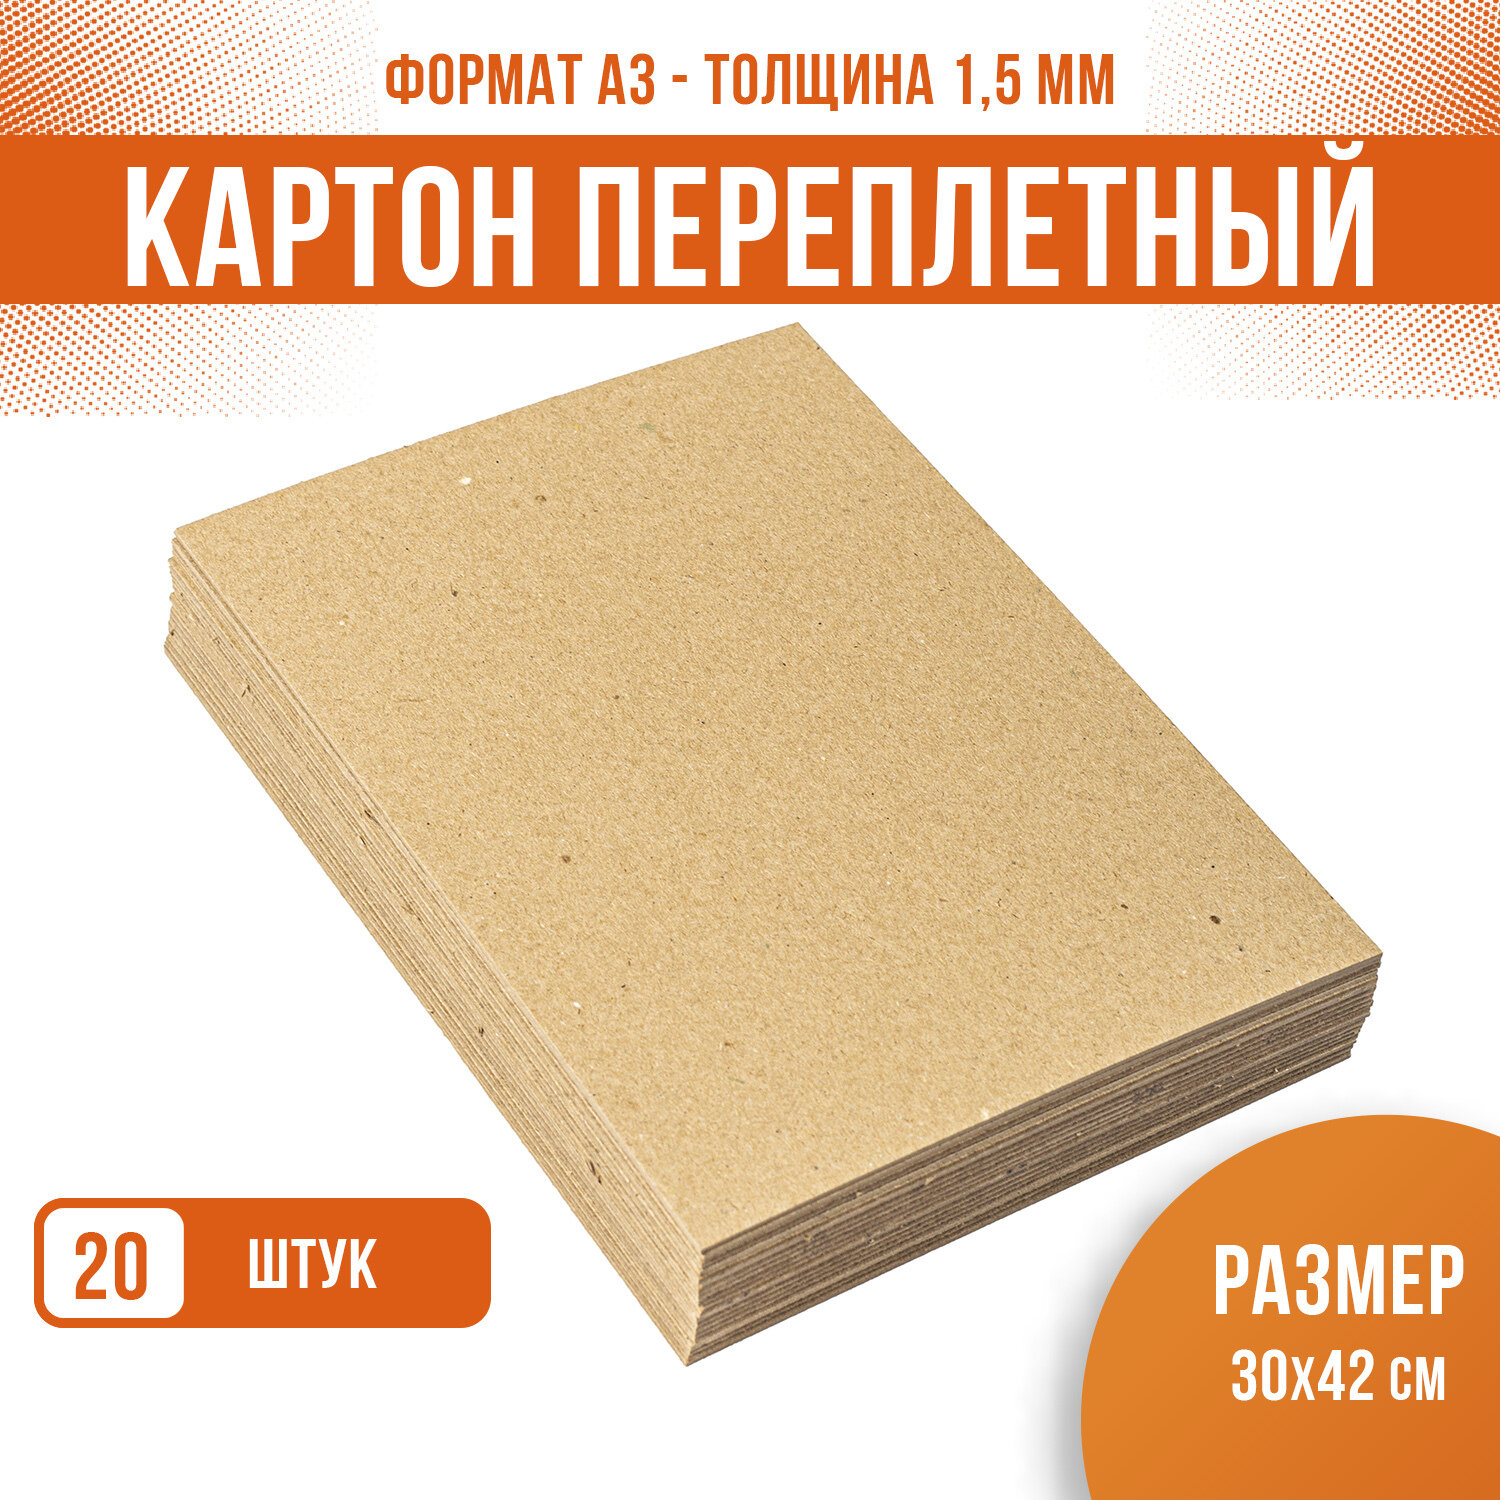 Картон переплетный пивной крафт подложка, PaperFox, для творчества, поделочный плотный толстый, 20 шт / 1,5 мм / А3 / 42х30 см